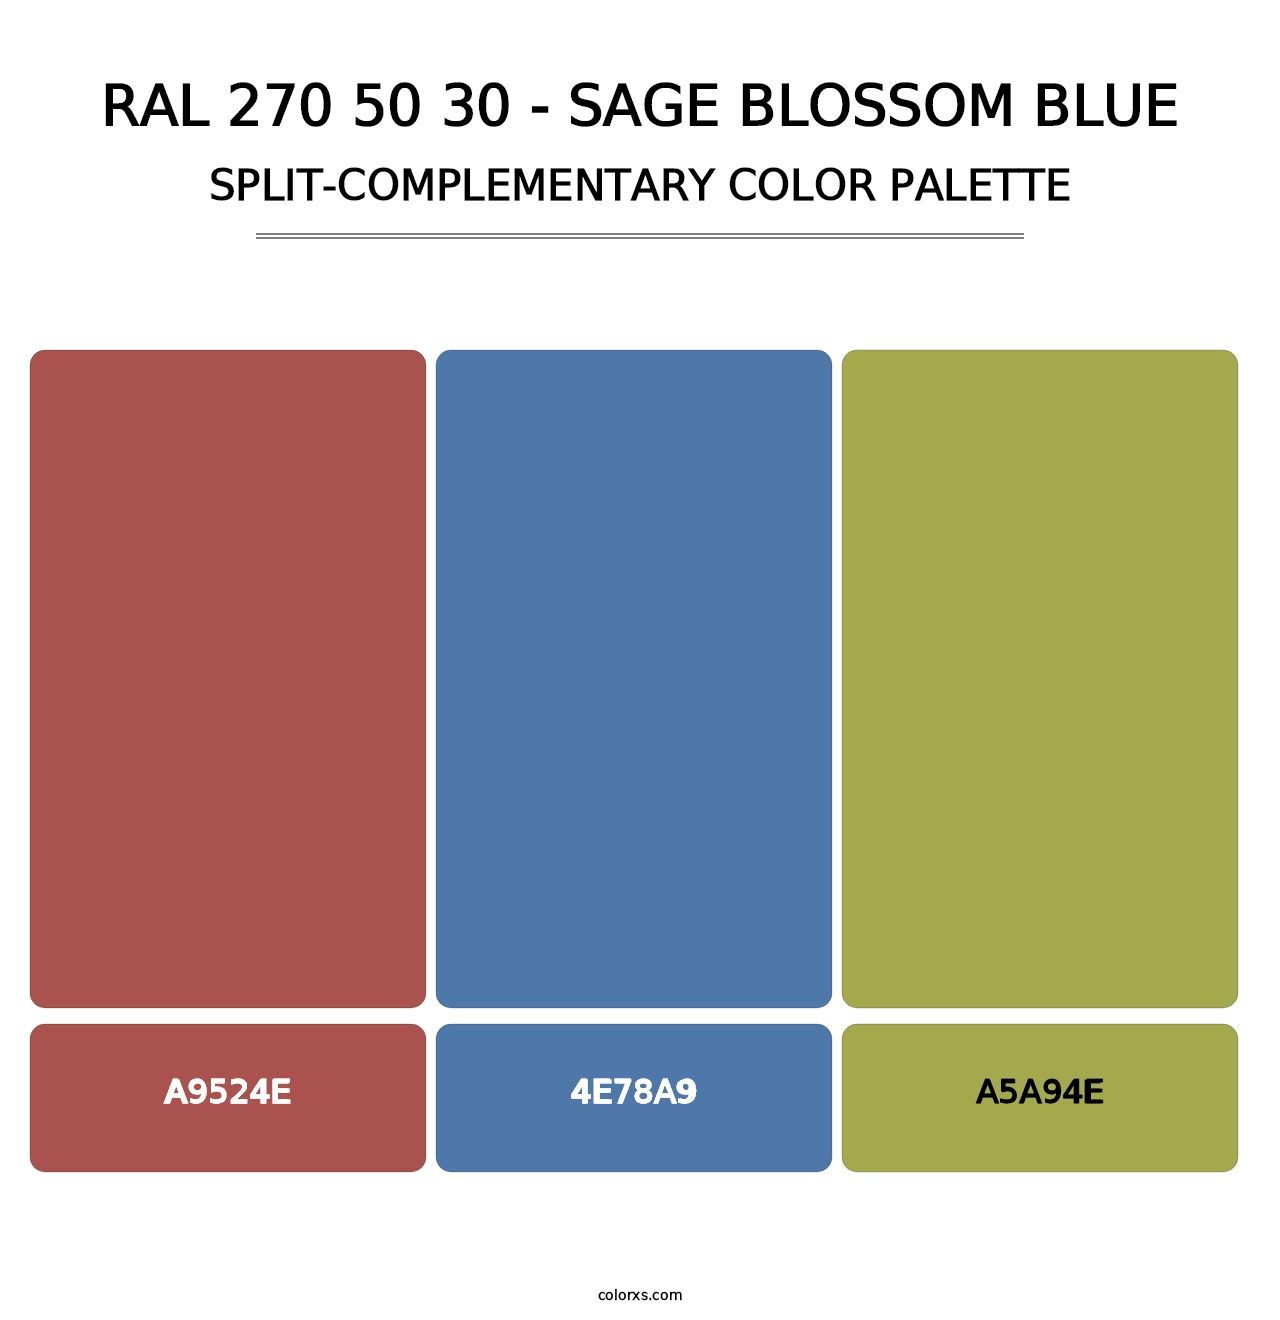 RAL 270 50 30 - Sage Blossom Blue - Split-Complementary Color Palette